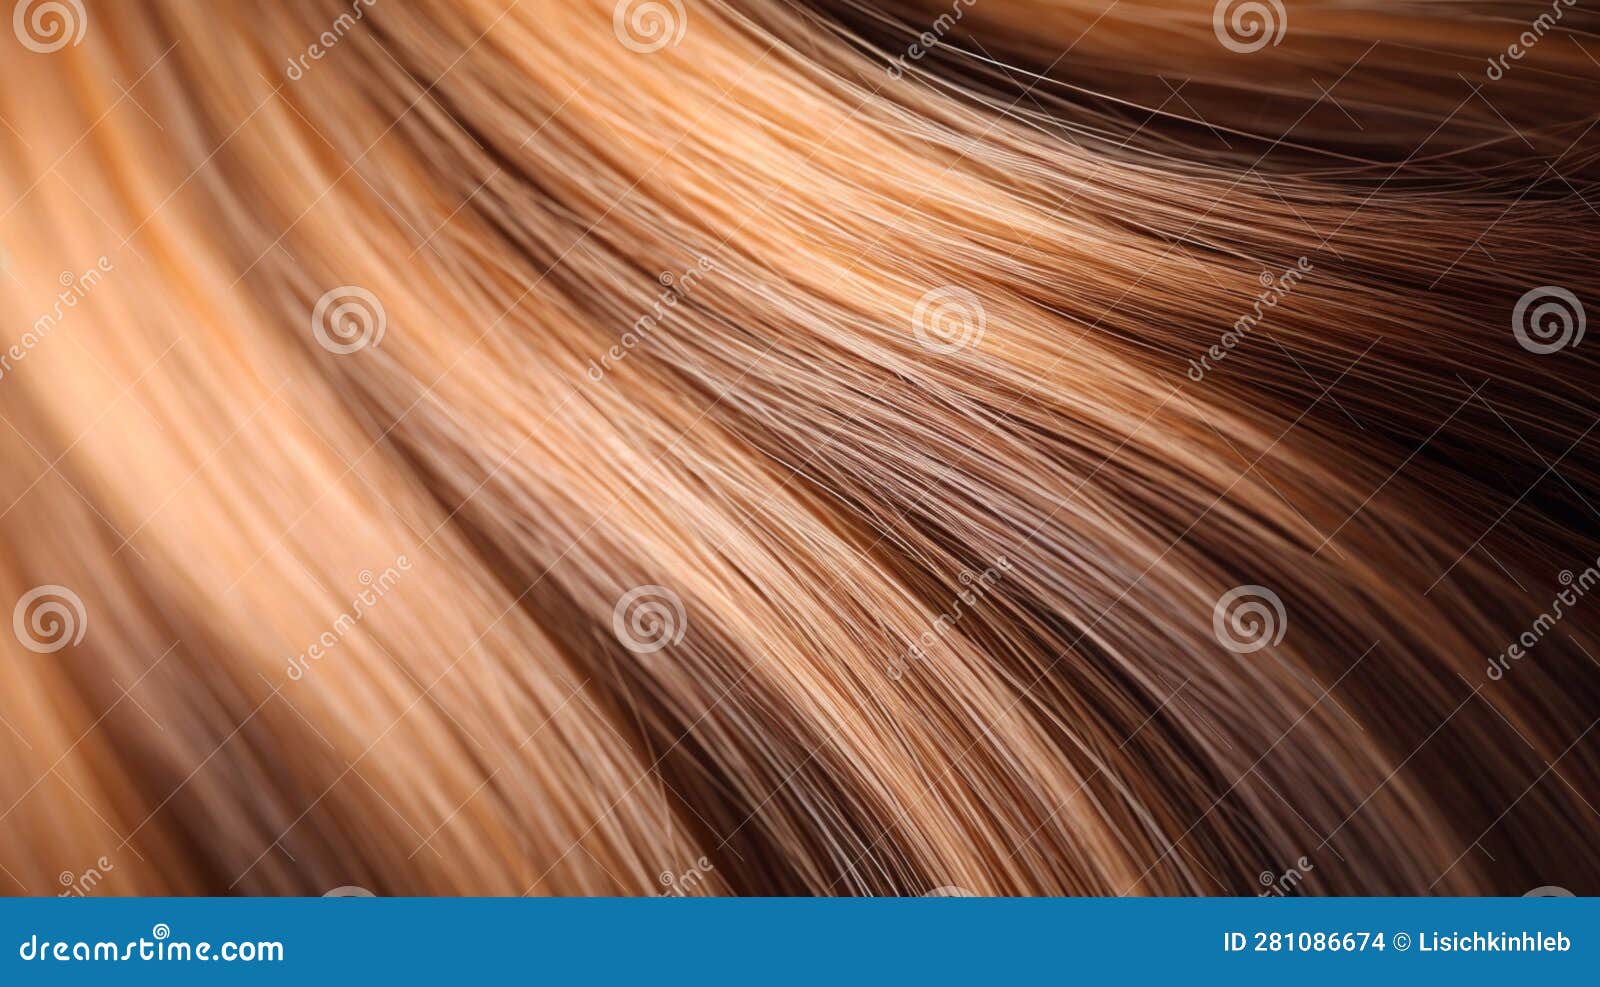 Blond Hair - wide 5